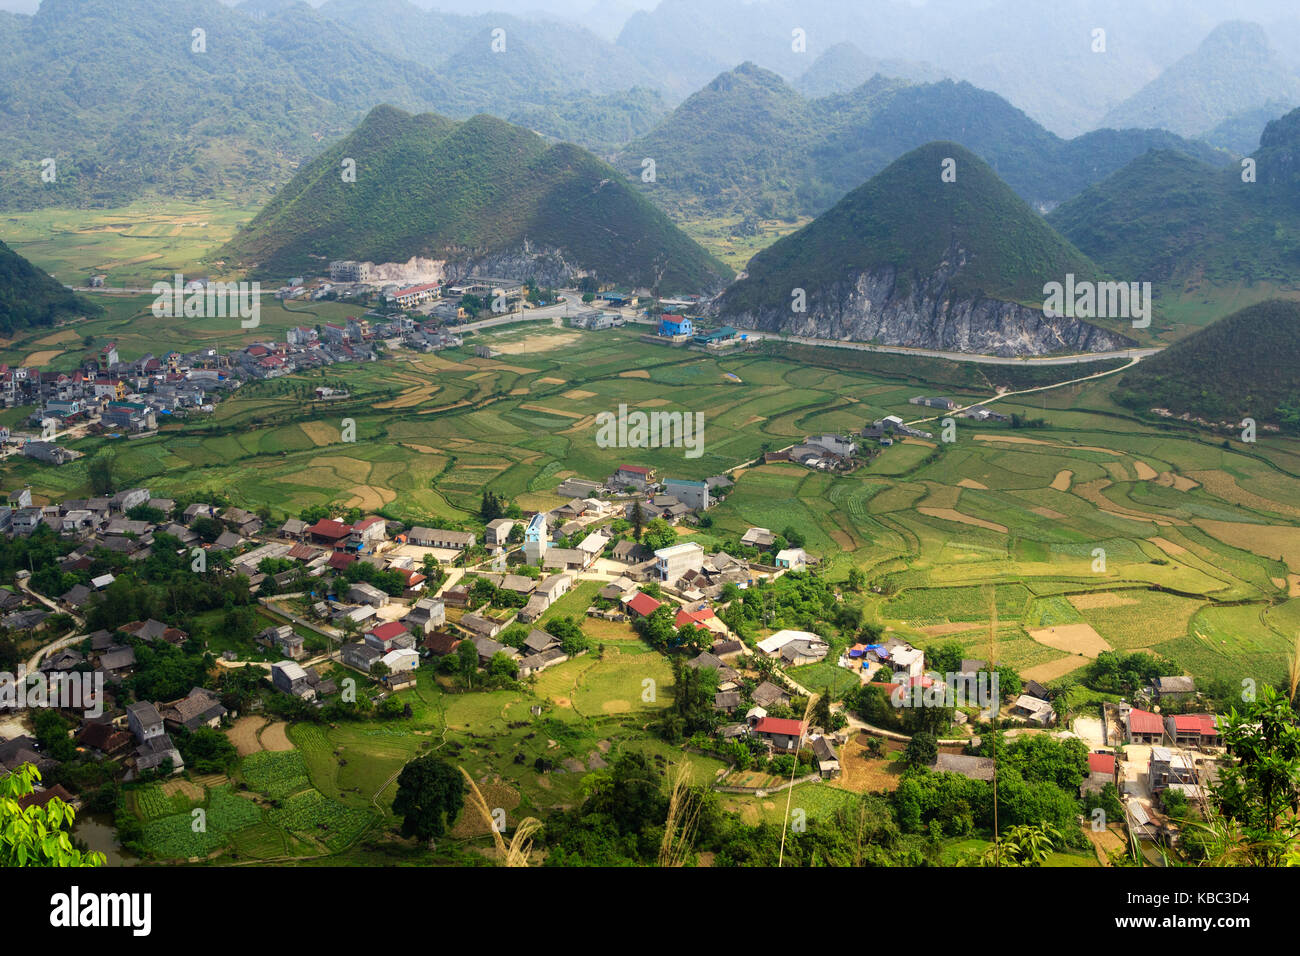 Tam Sohn Stadt, Quan ba, Ha Giang, Vietnam. Quan ba ist ein Landkreis in der Provinz Ha Giang in der nordöstlichen Region von Vietnam. Stockfoto